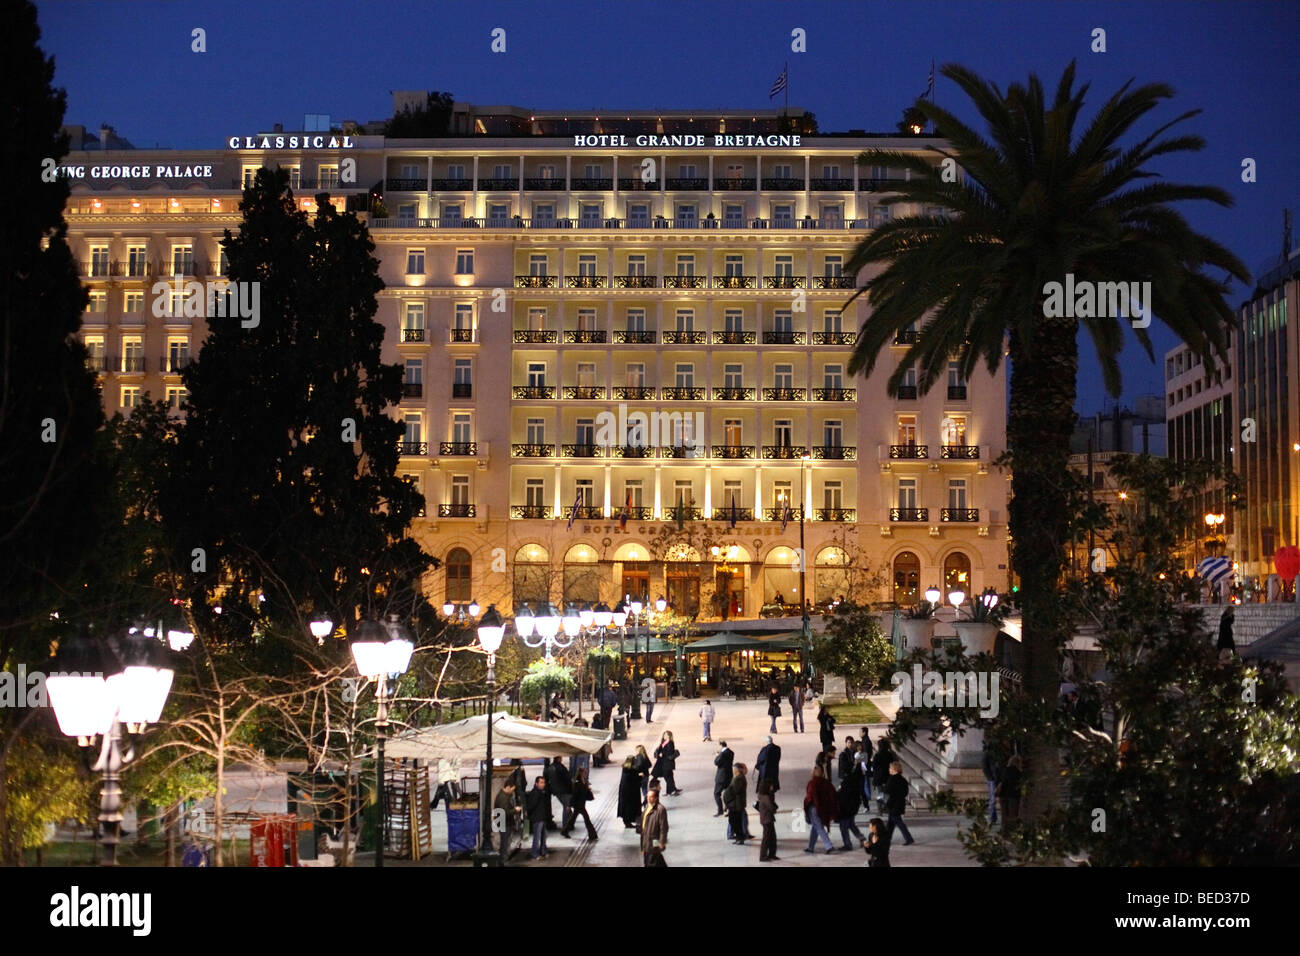 Grande Bretagne Hotel, Piazza Syntagma, Atene, Grecia Foto Stock